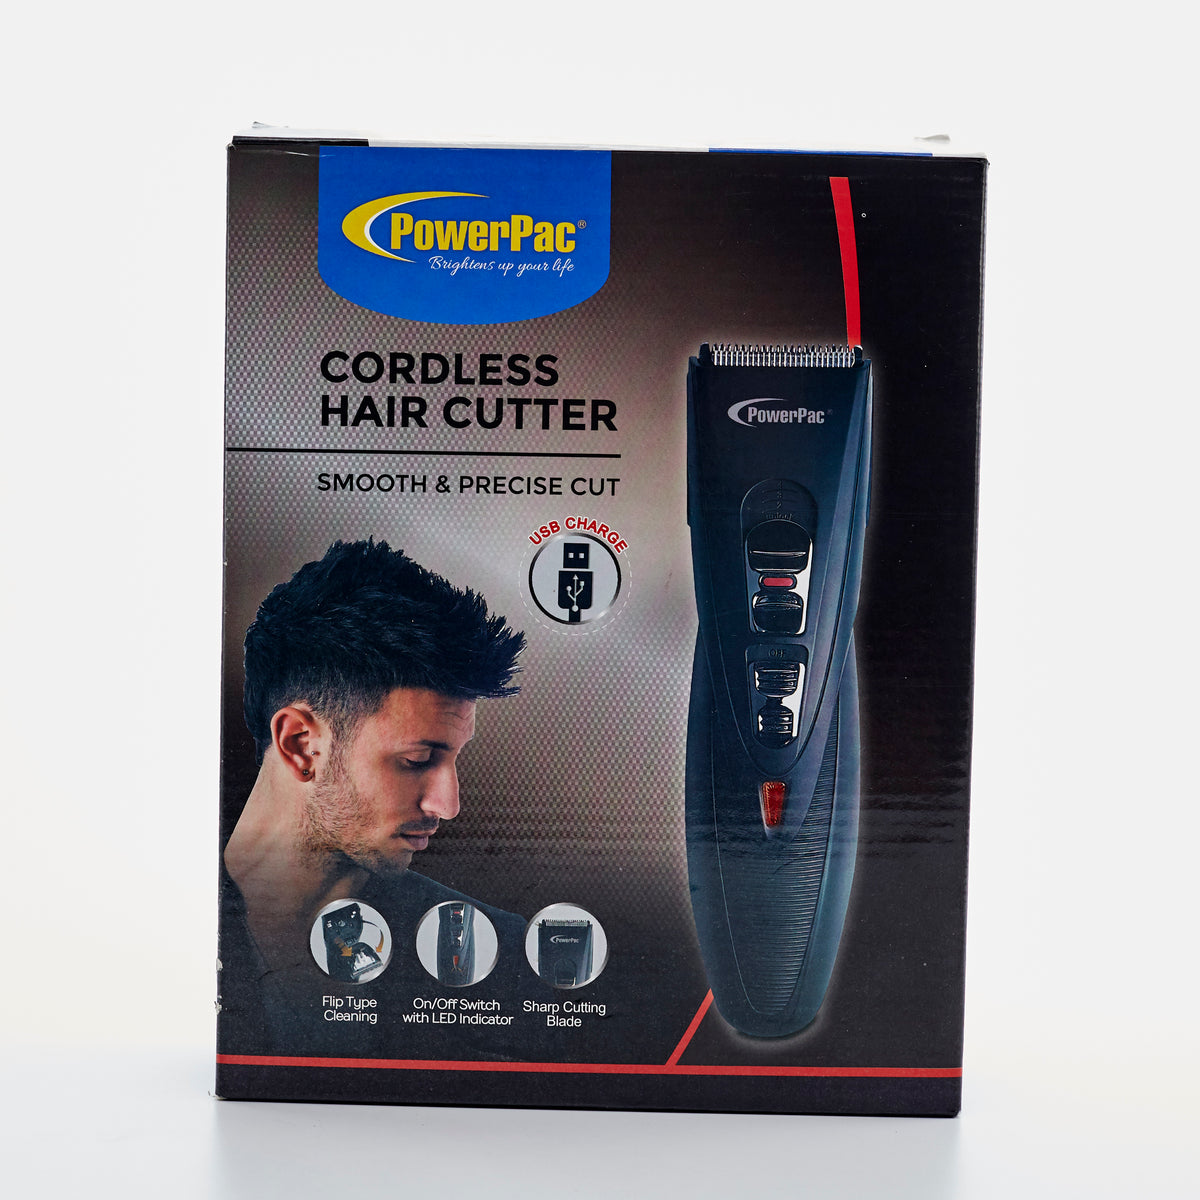 powerpac cordless hair cutter